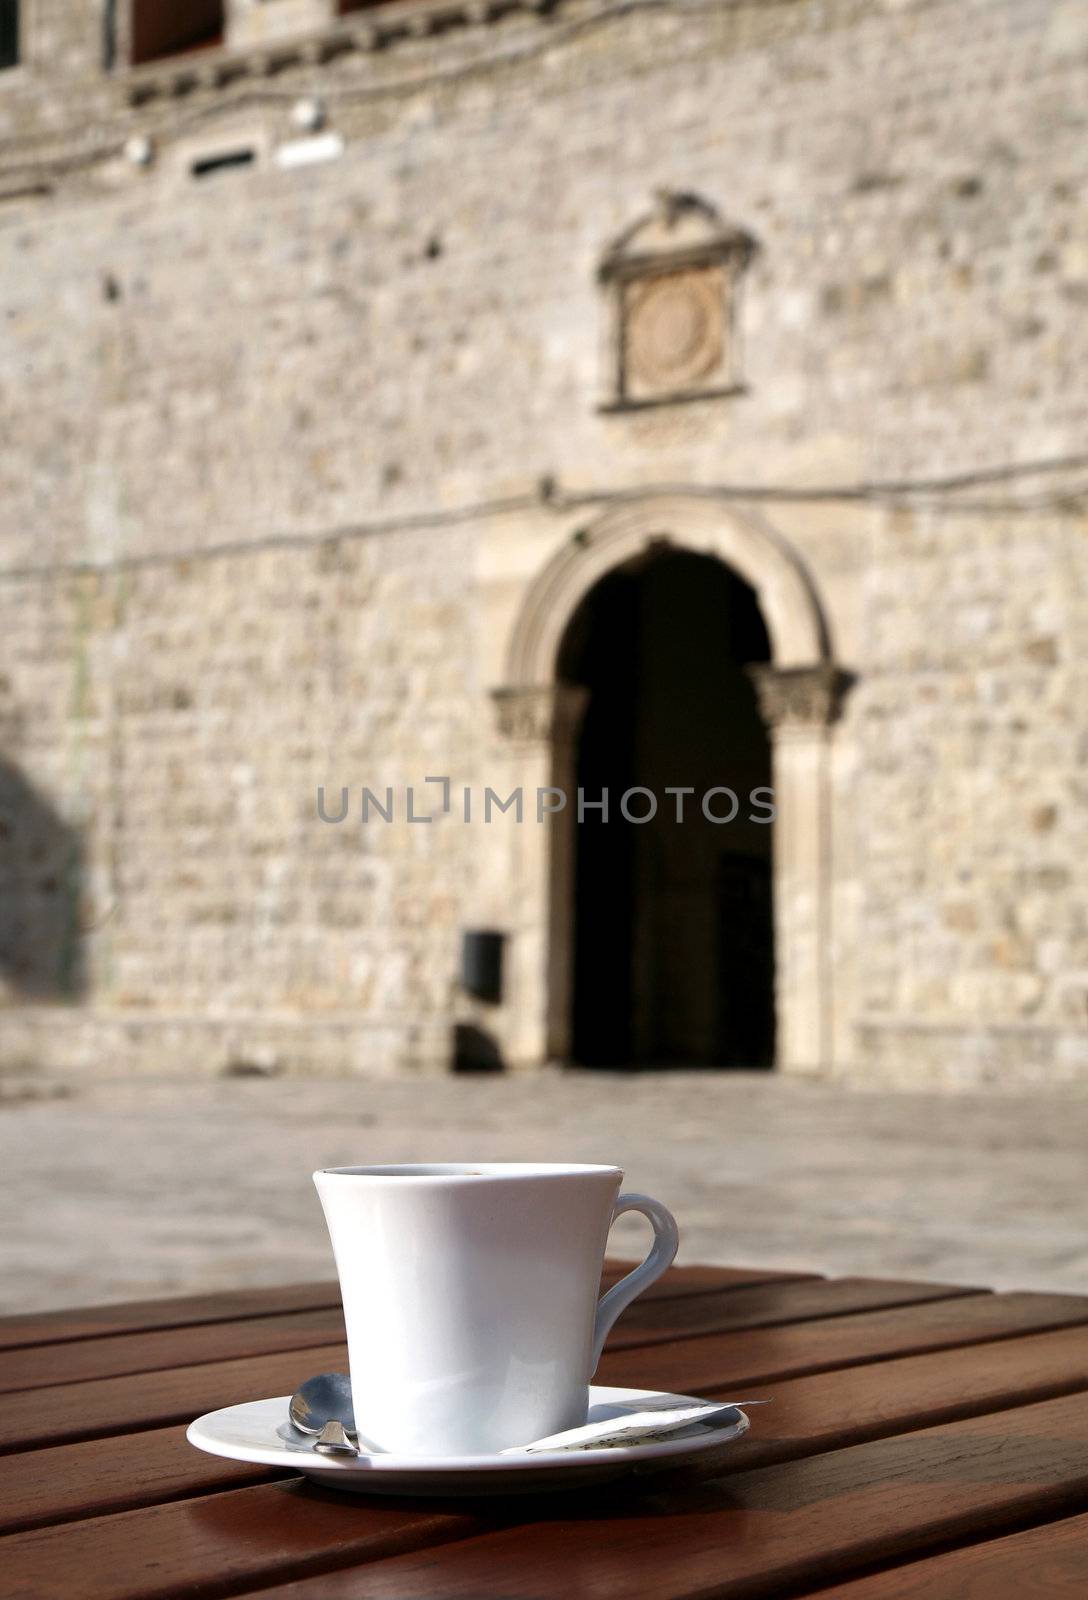 Caffee in Old Town in Dubrovnik - Croatia by fotokate